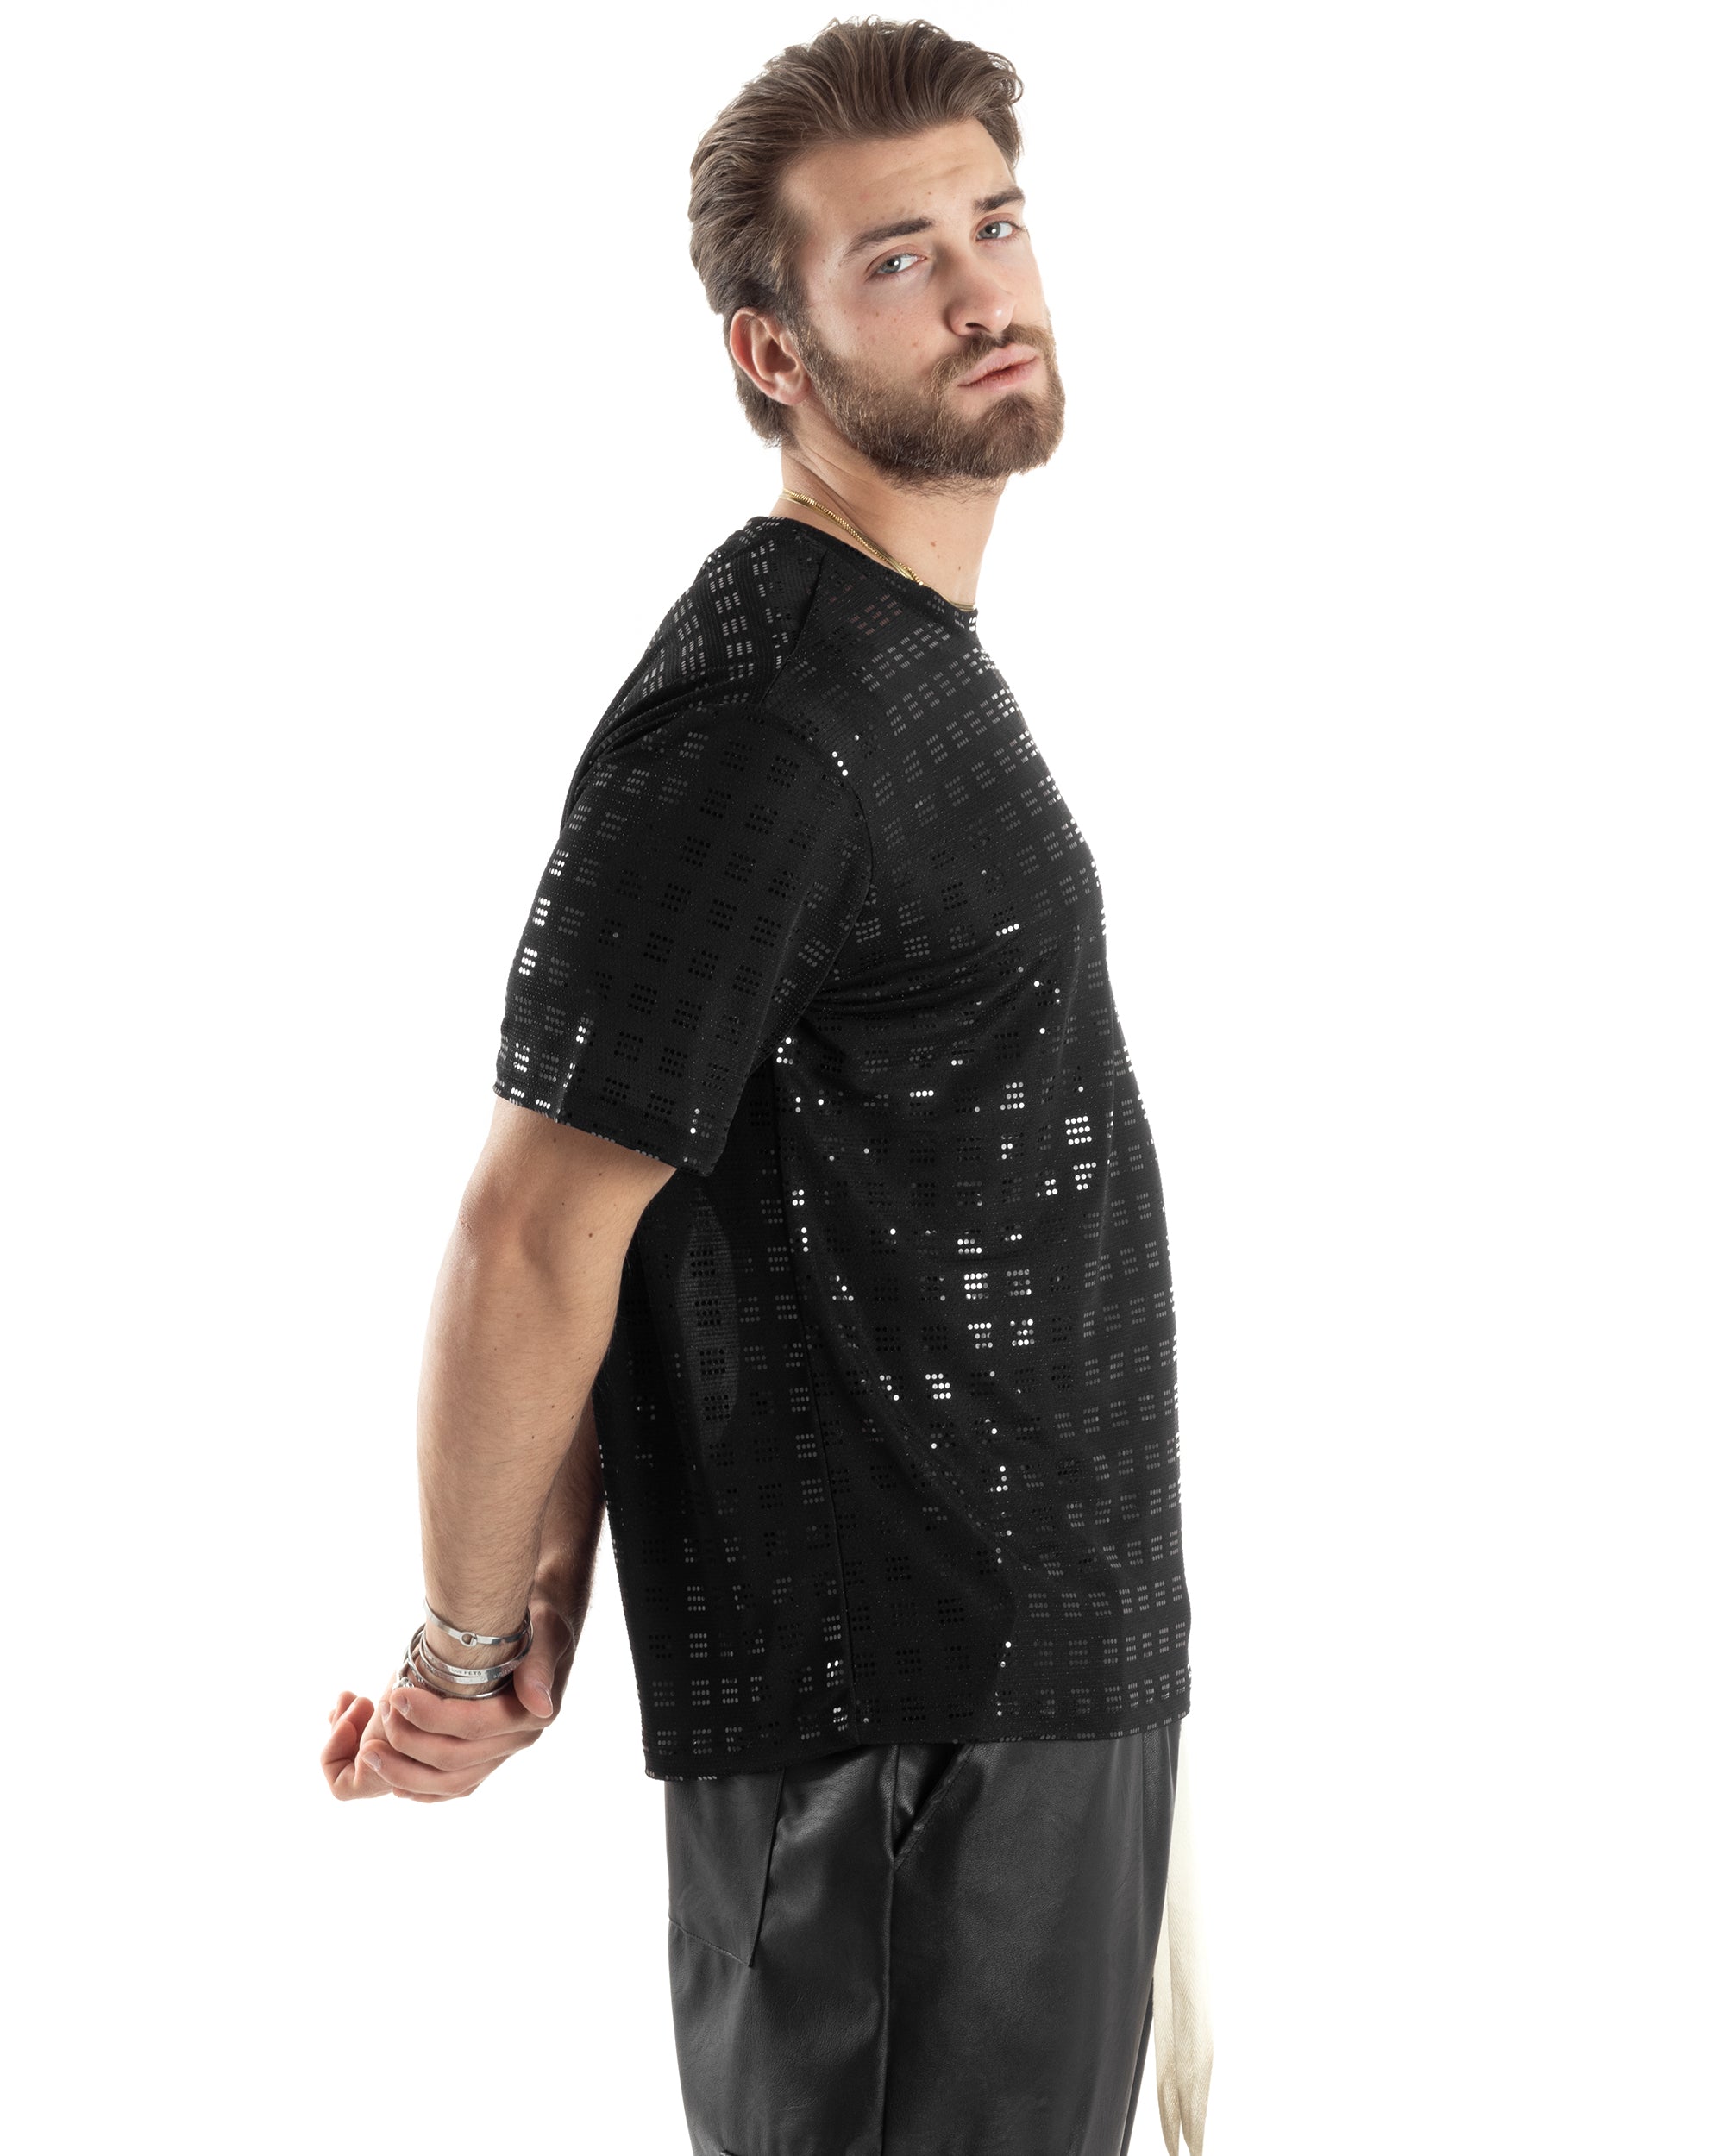 T-shirt Uomo Manica Corta Con Brillantini Strass Diamond Viscosa Cotone Nero Casual GIOSAL-TS3030A